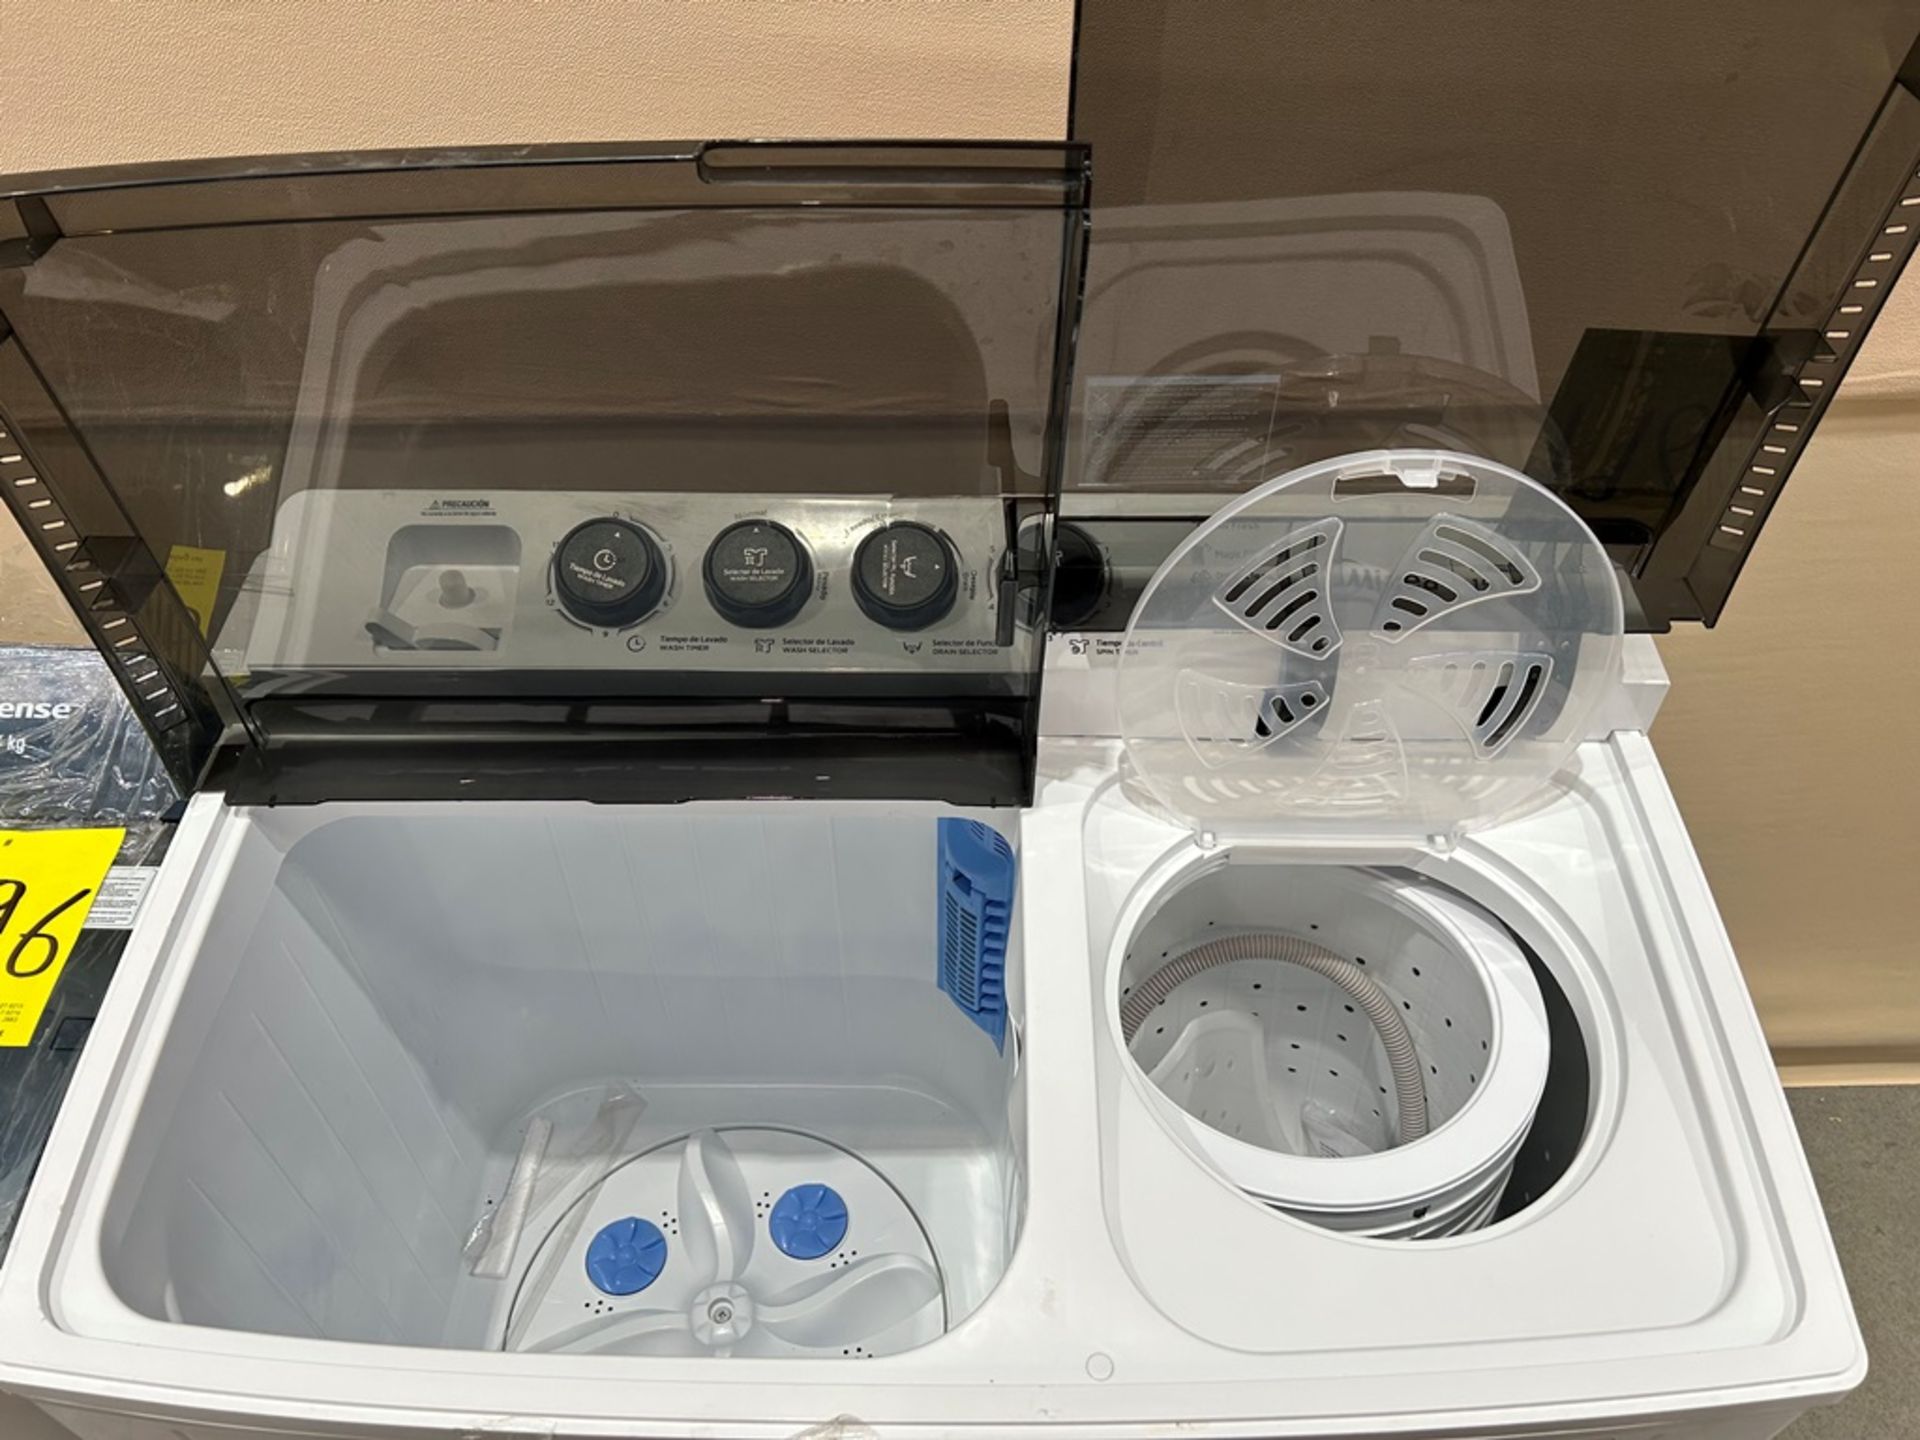 Lote de 2 lavadoras contiene: 1 Lavadora de 19 KG Marca MIDEA, Modelo MT100W190, Serie 01241, Color - Image 5 of 6